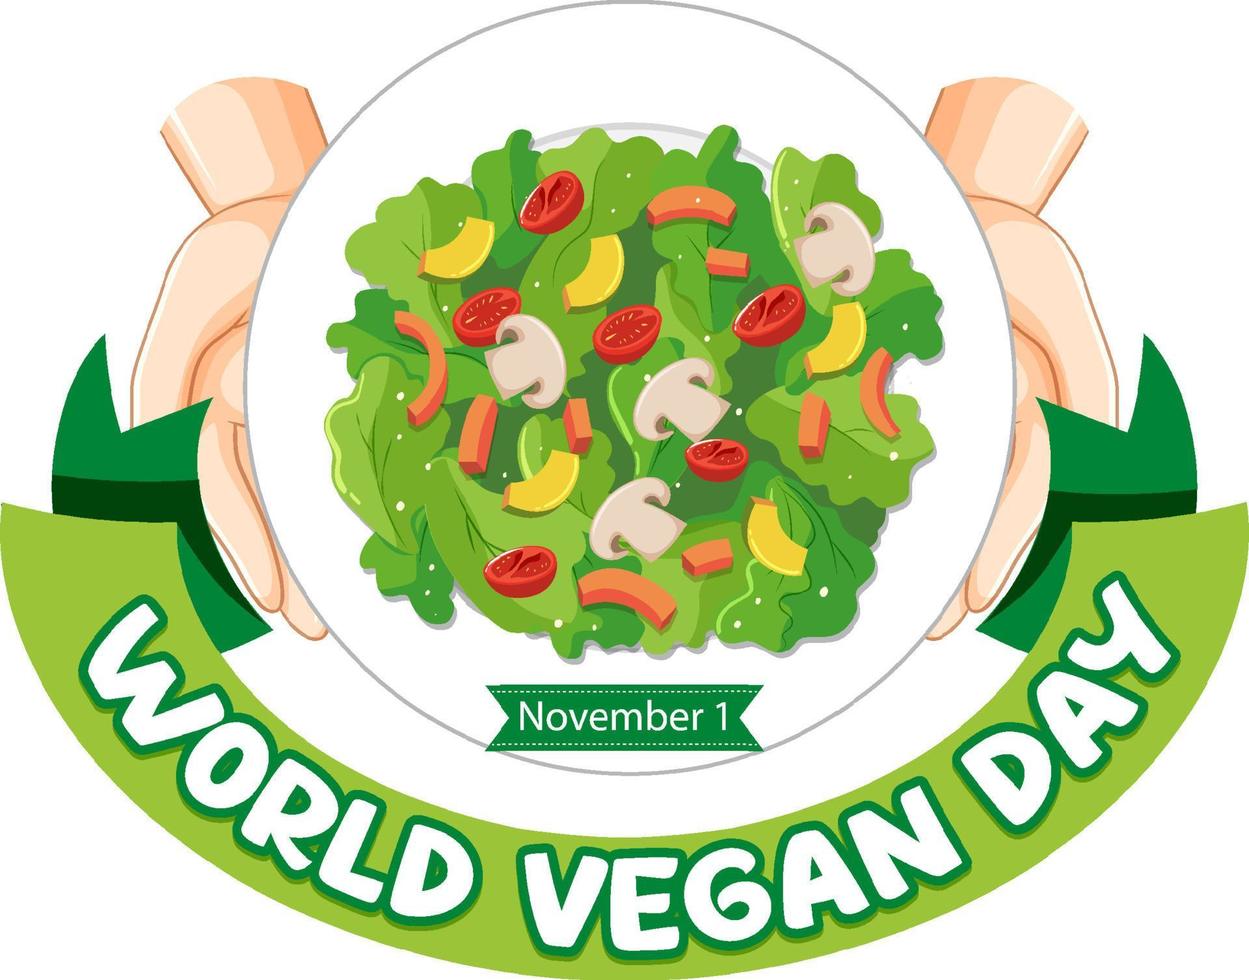 concepto de logotipo del día mundial vegano vector